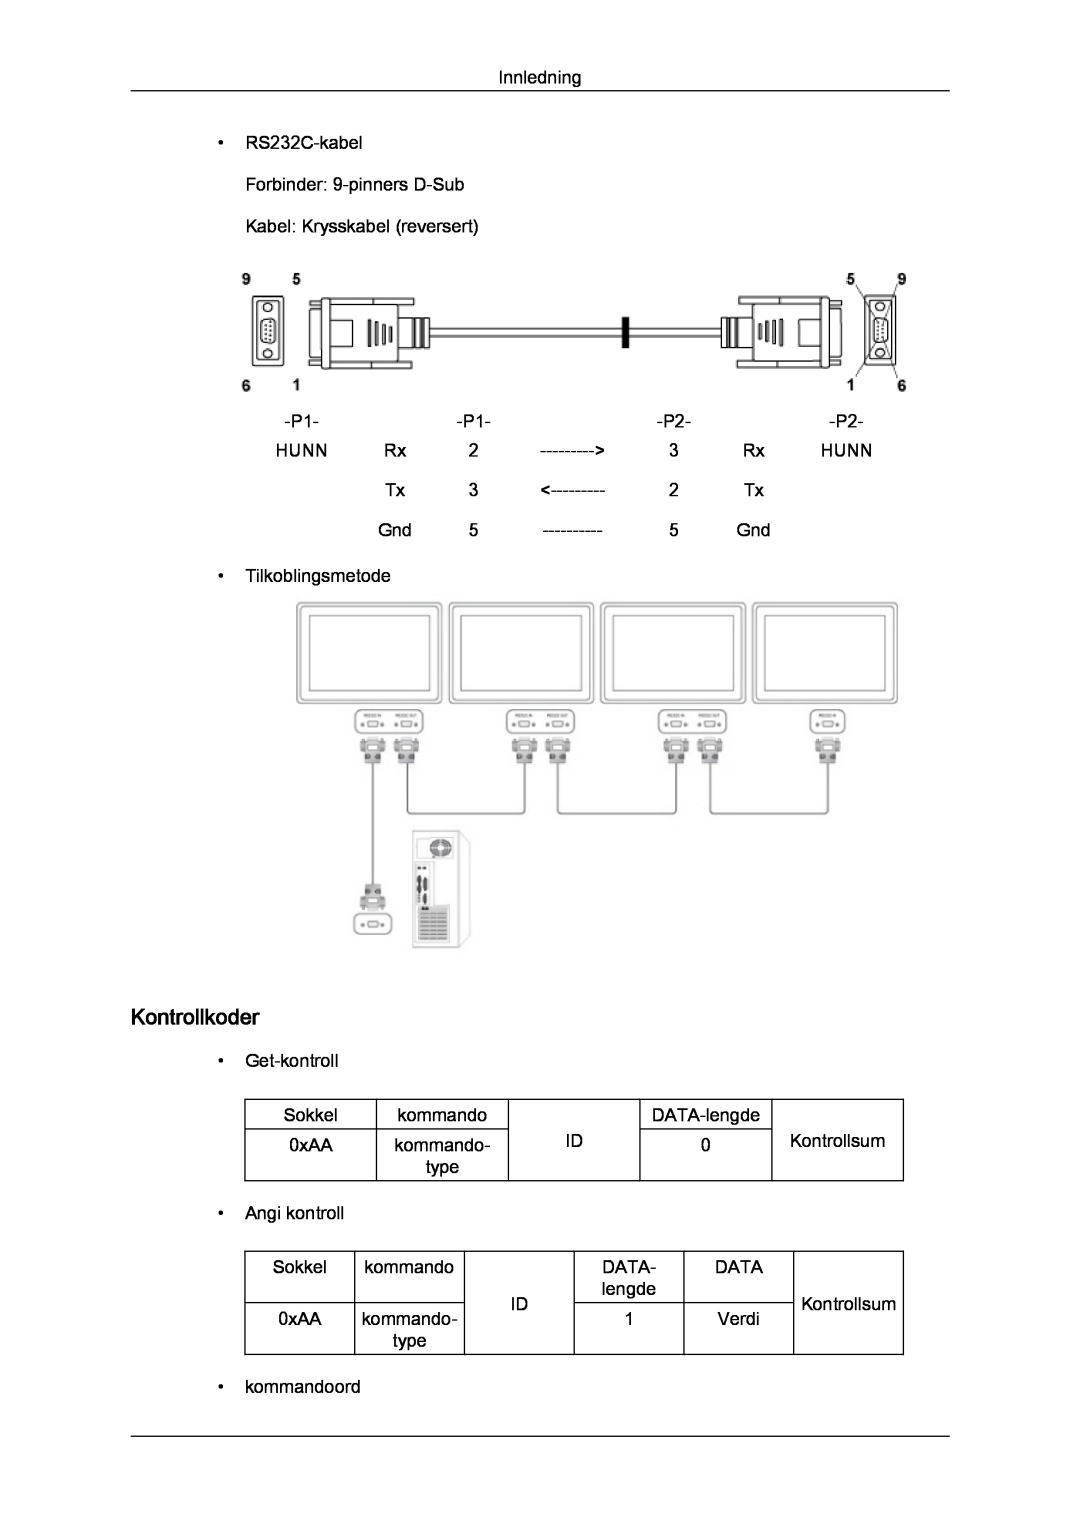 Samsung LH40CRPMBC/EN, LH46CRPMBD/EN, LH46CRPMBC/EN, LH40CRPMBD/EN manual Kontrollkoder 